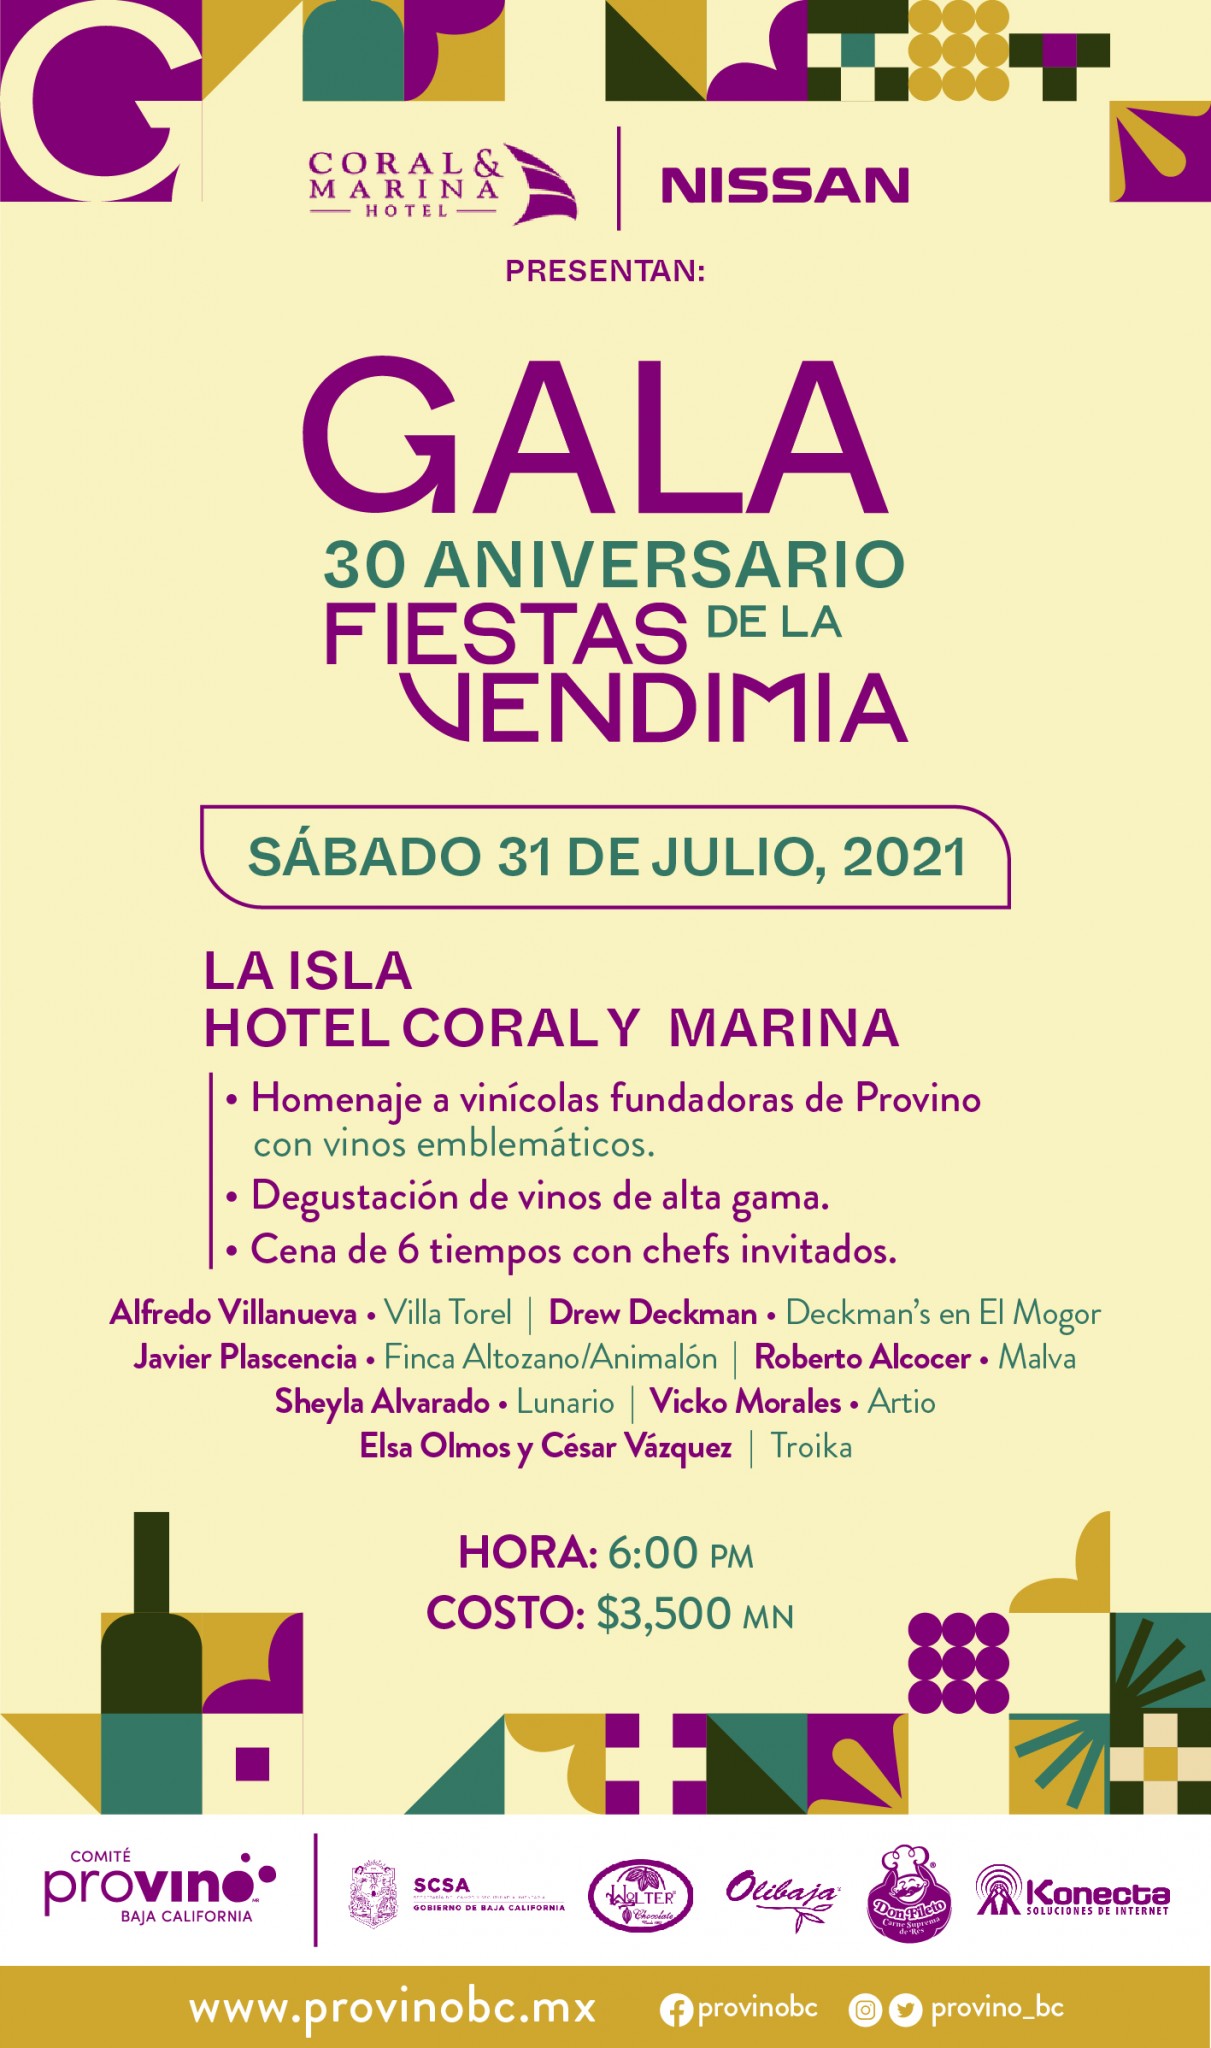 Así se celebrará el 30 Aniversario de las Fiestas de la Vendimia en Ensenada